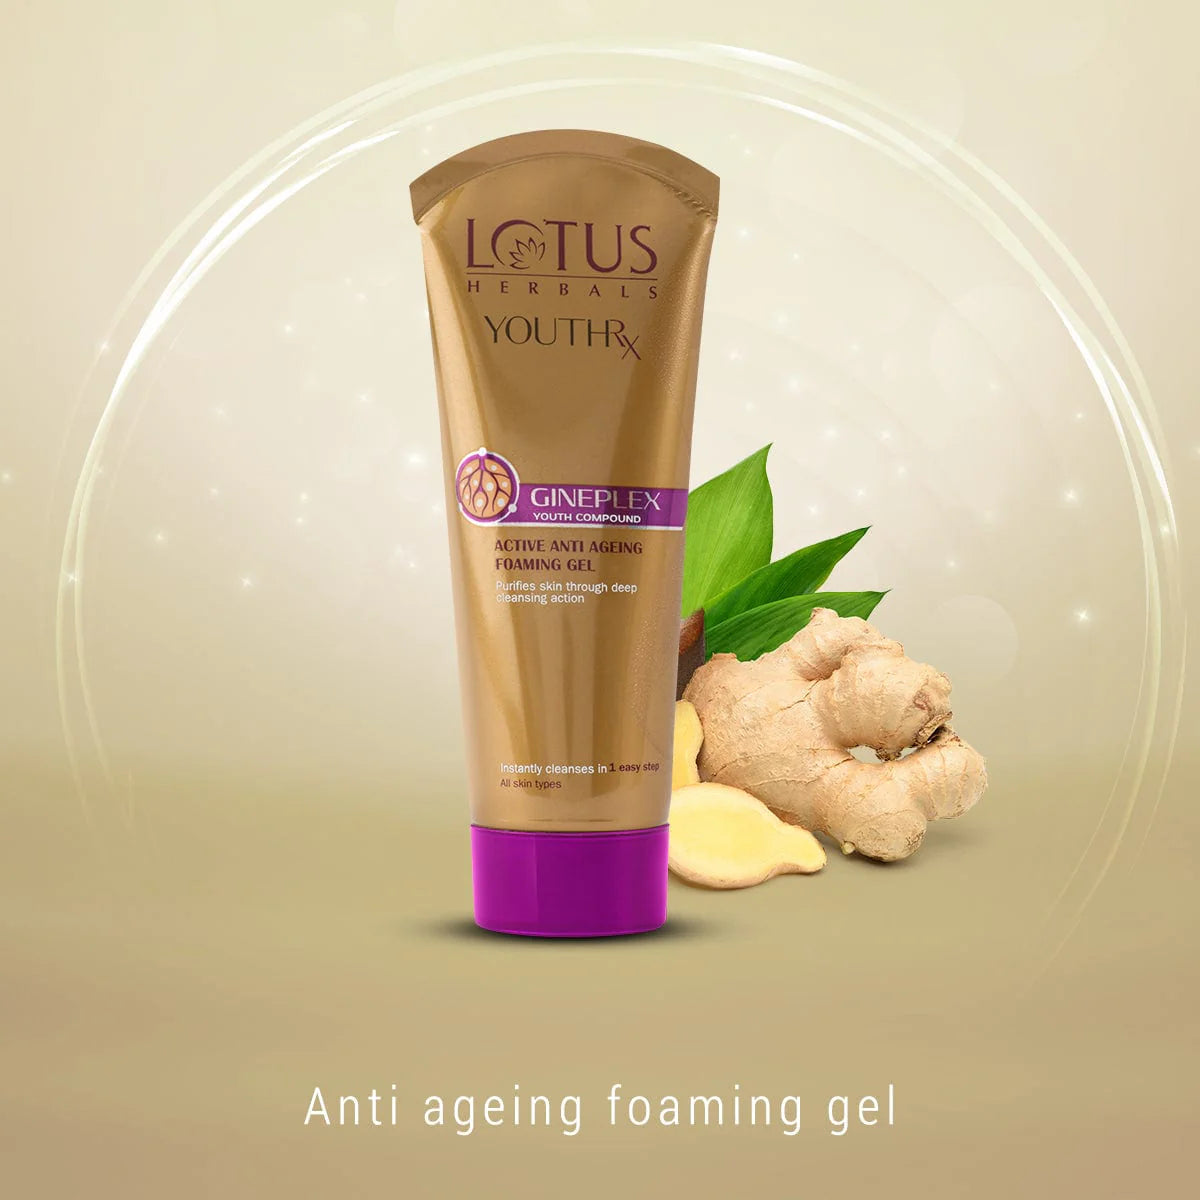 lotus herbals youthrx active anti ageing foaming gel price in nepal